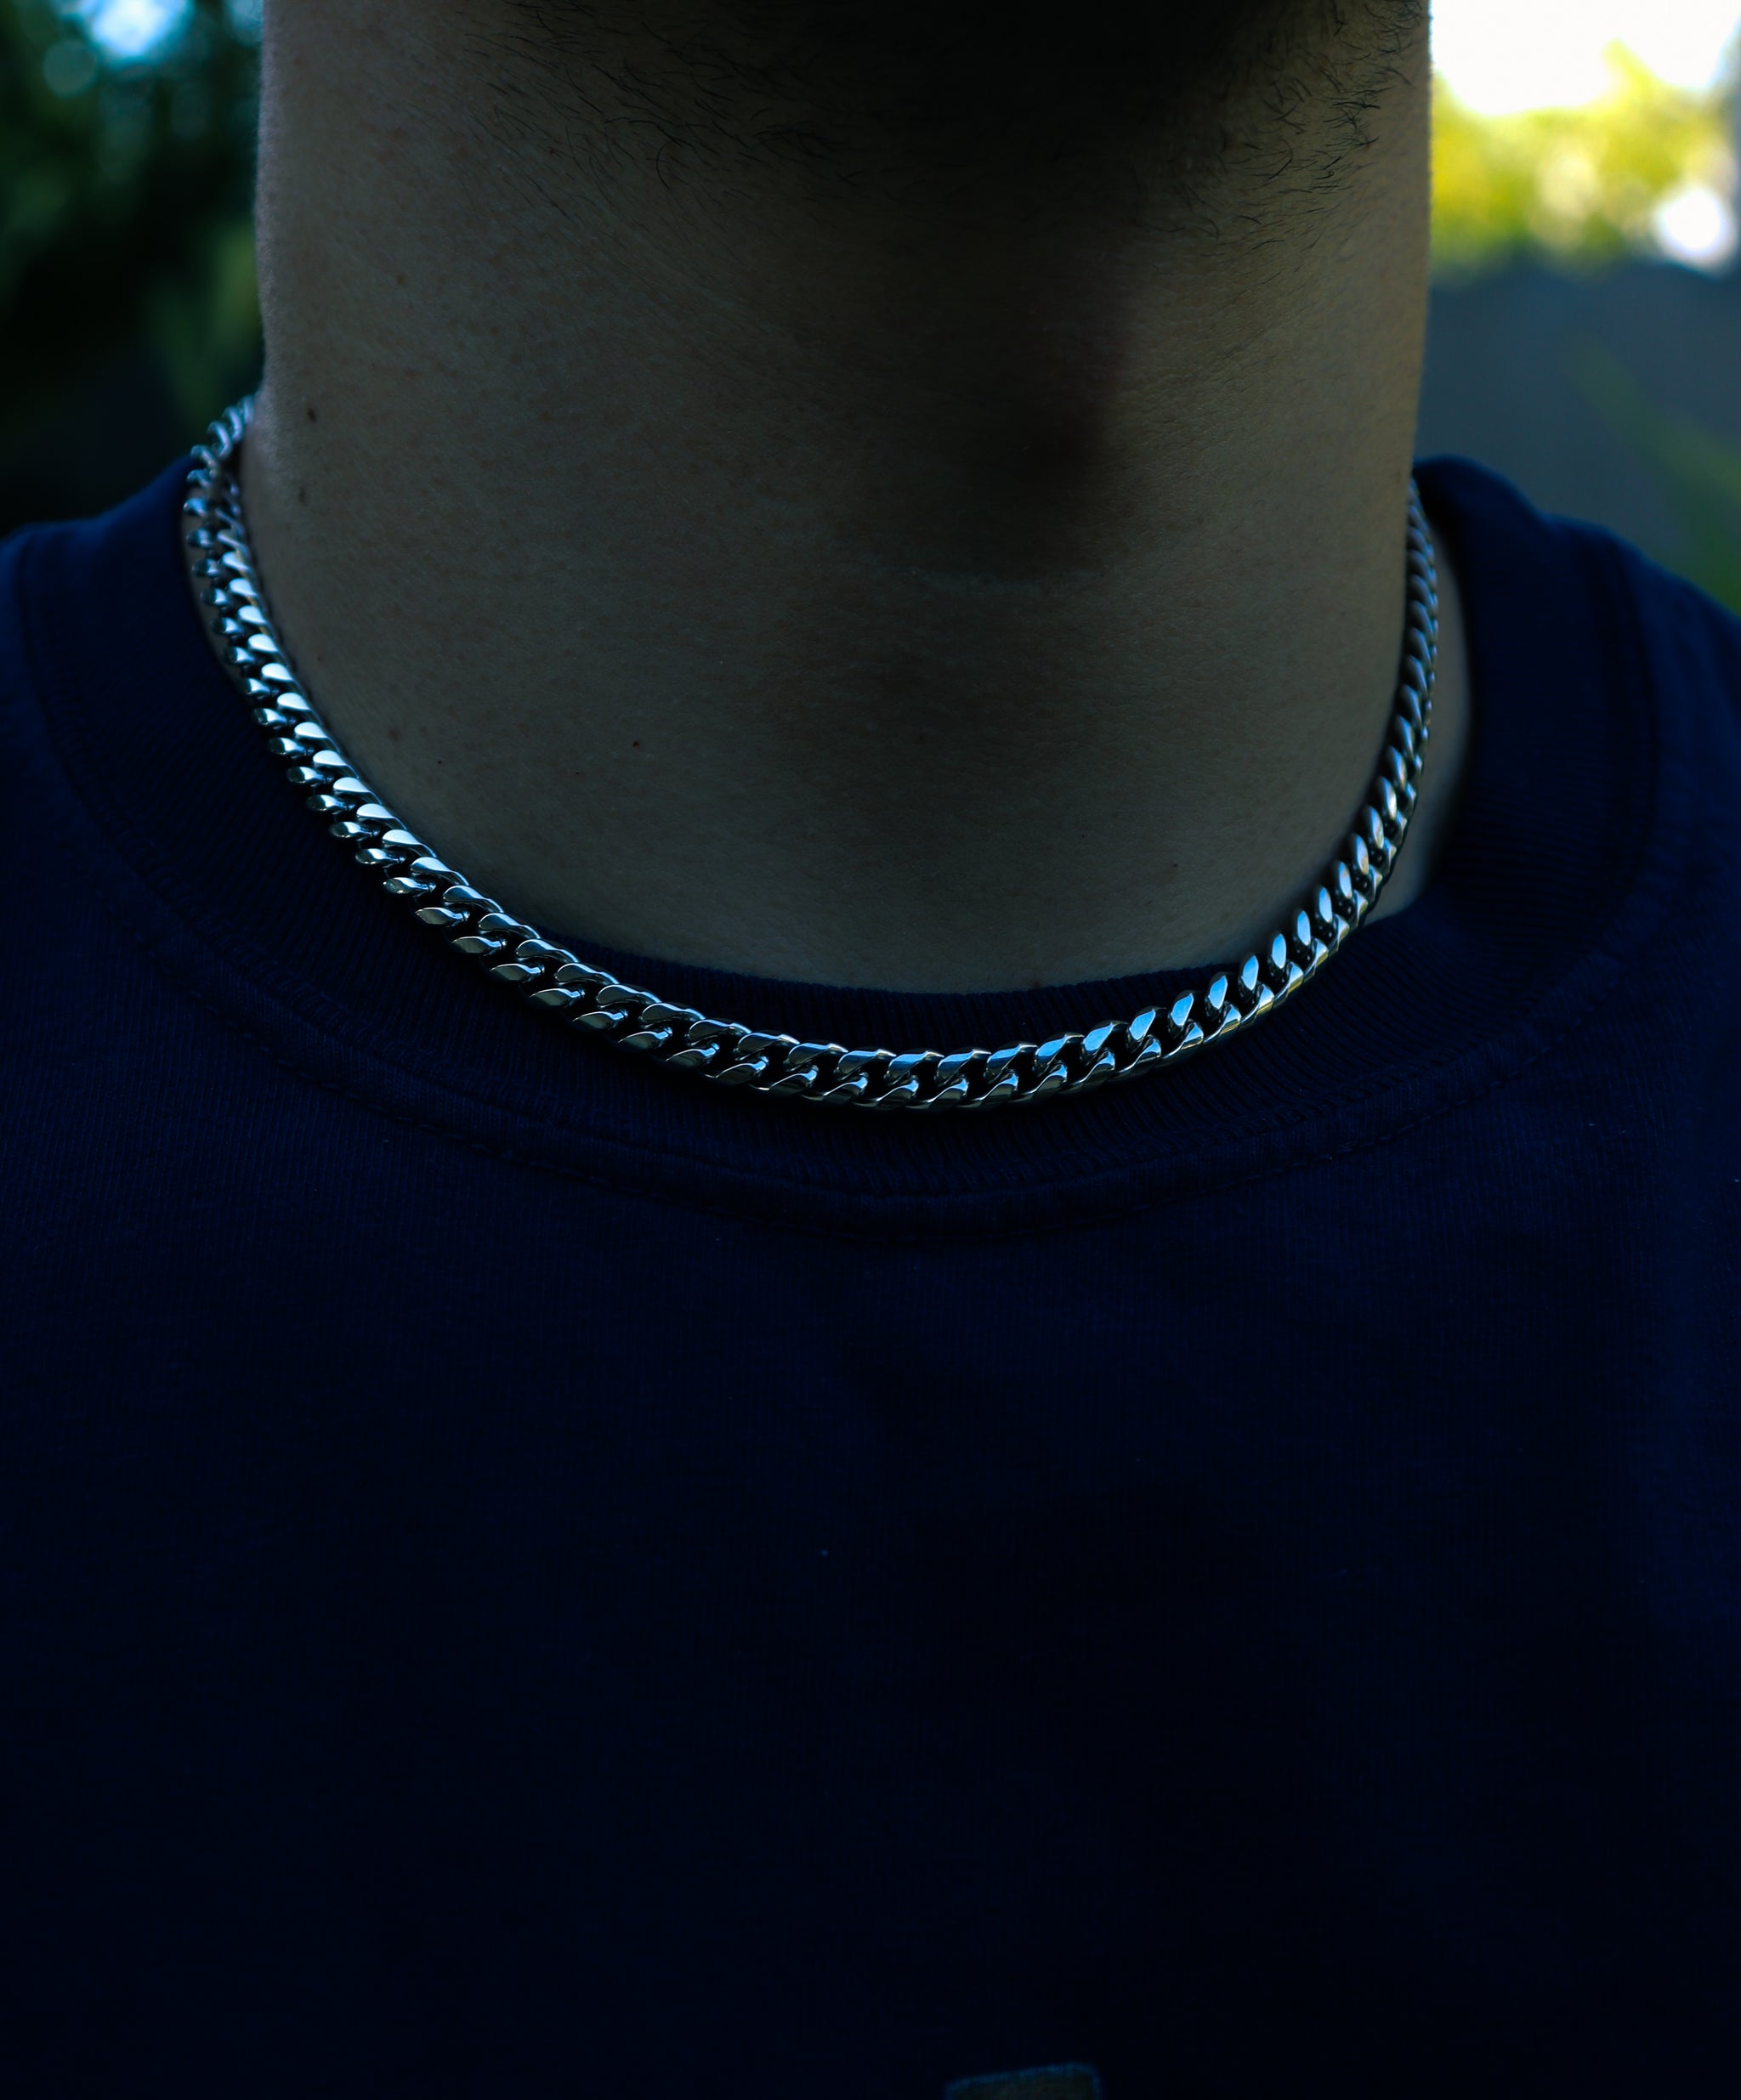 Silver Curb Chain 6mm - Fashion Jewelry by Yordy.